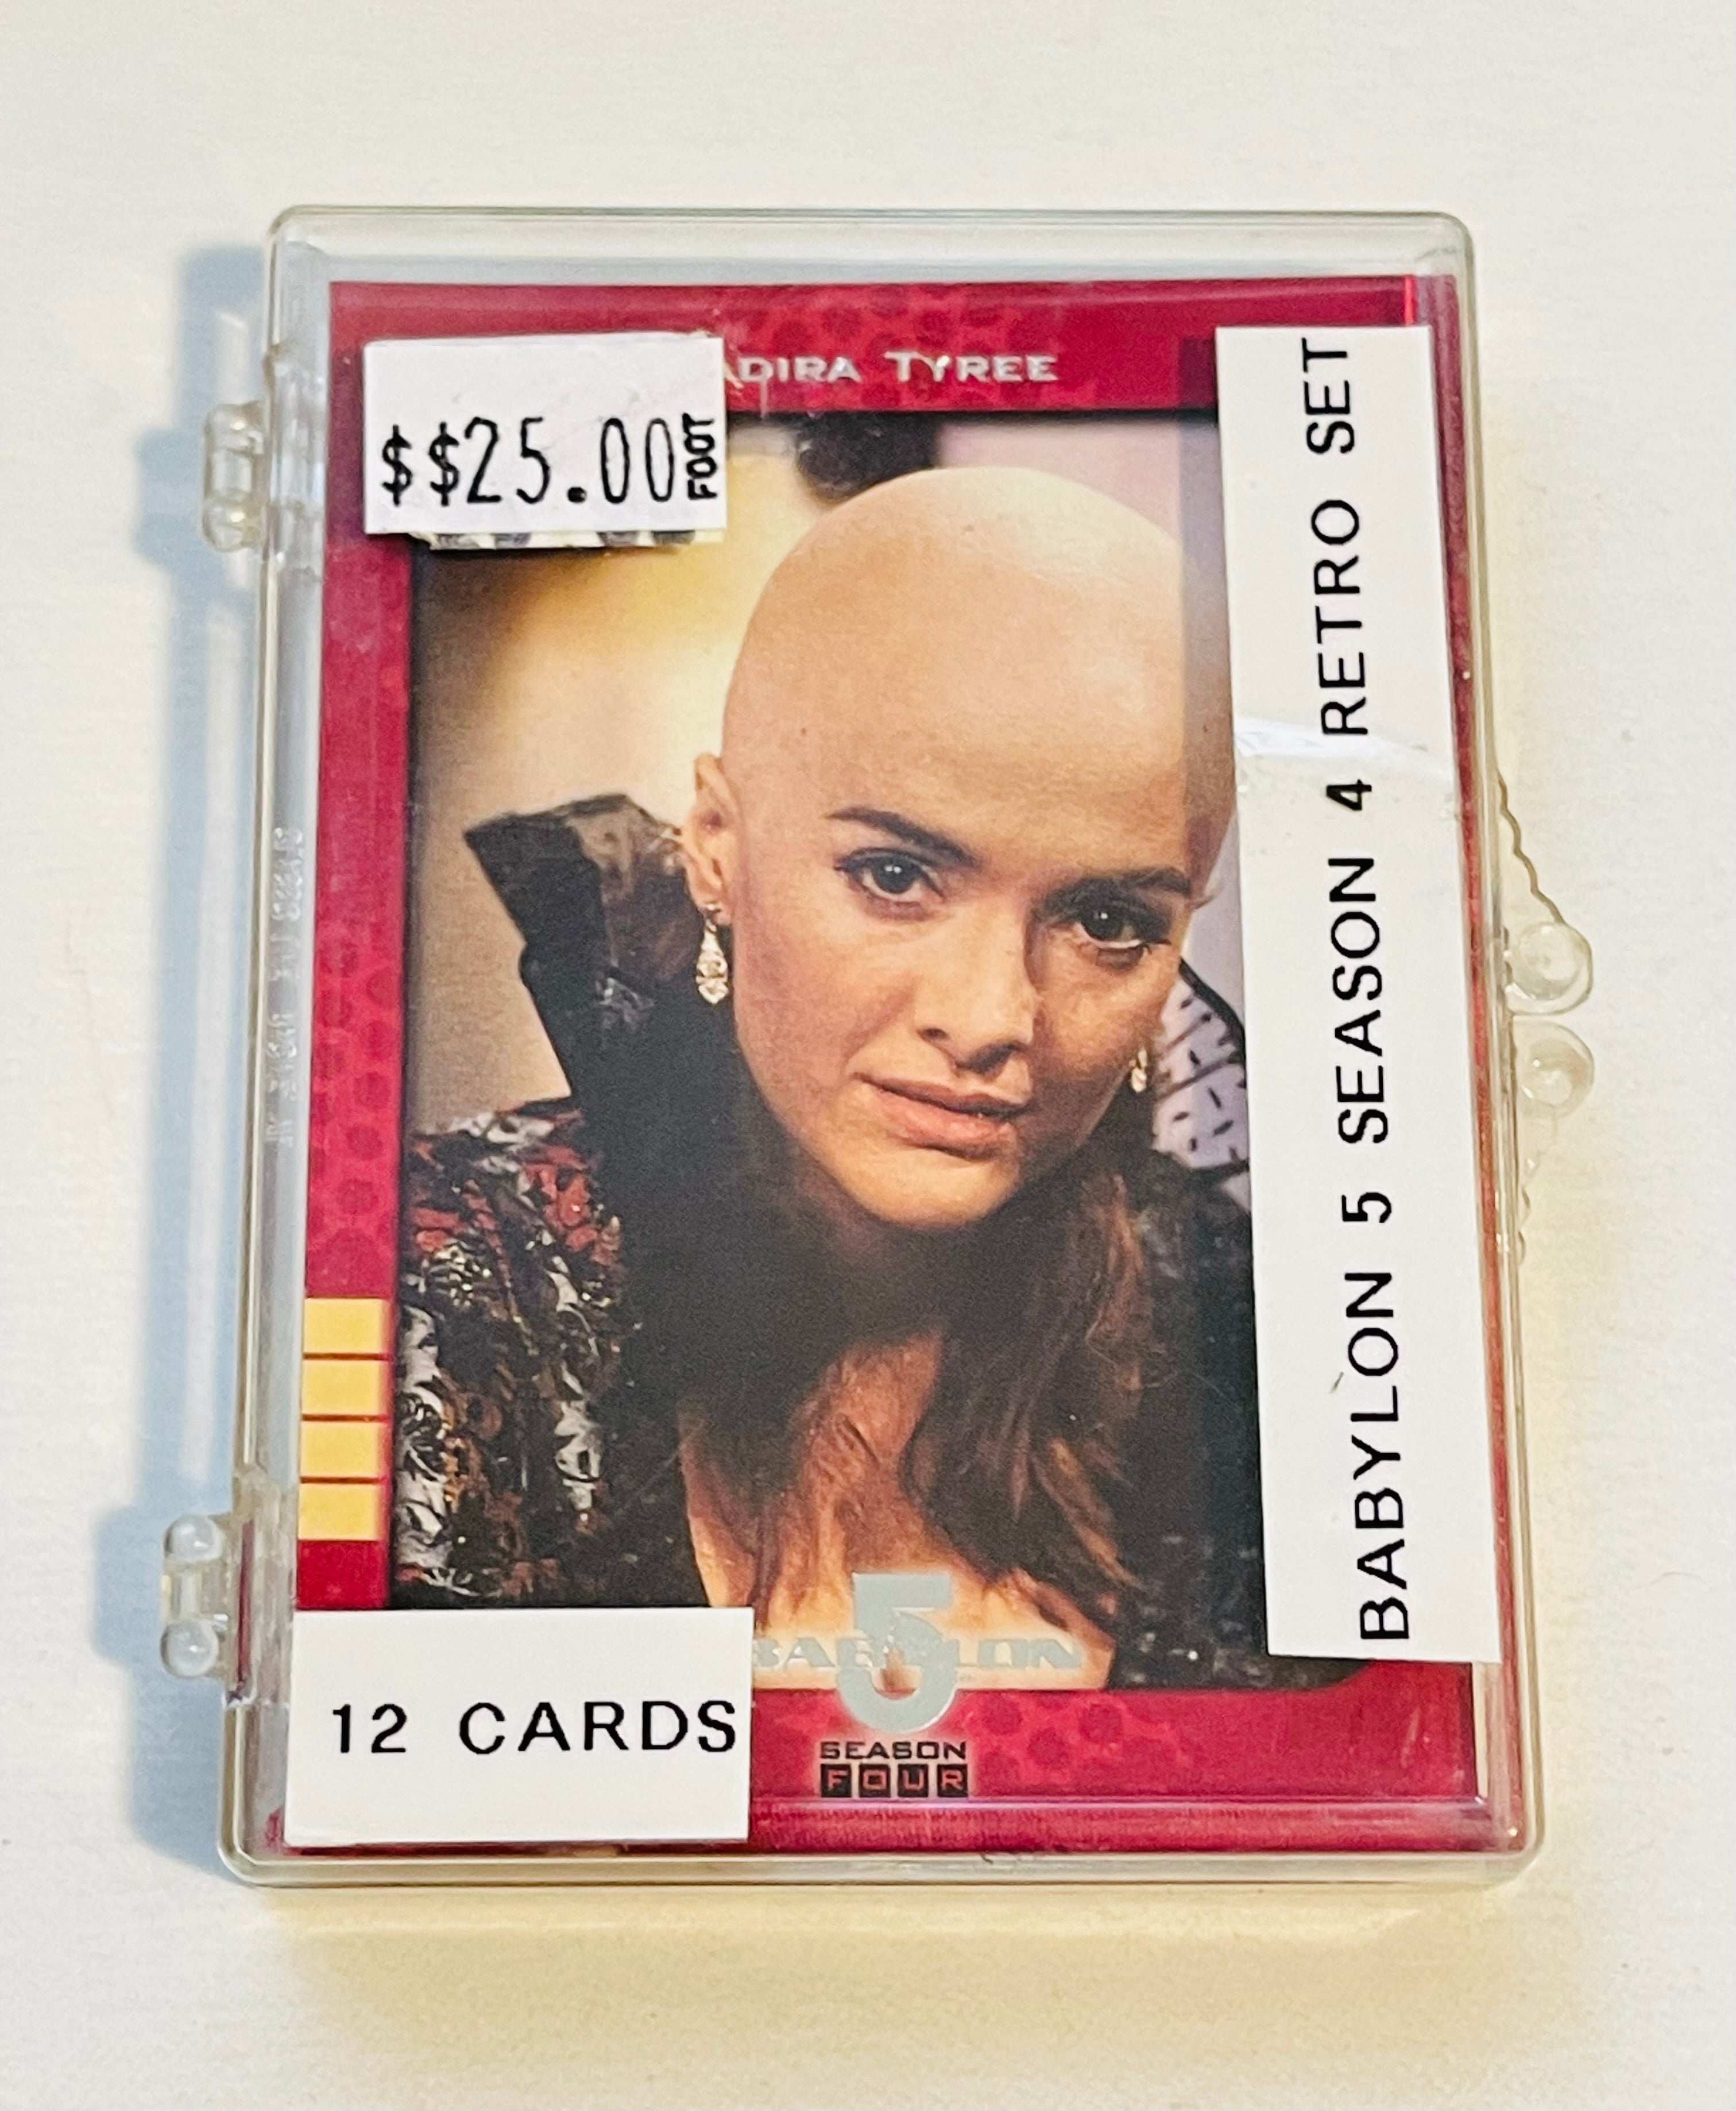 Babylon 5 season 4 insert cards set 1996